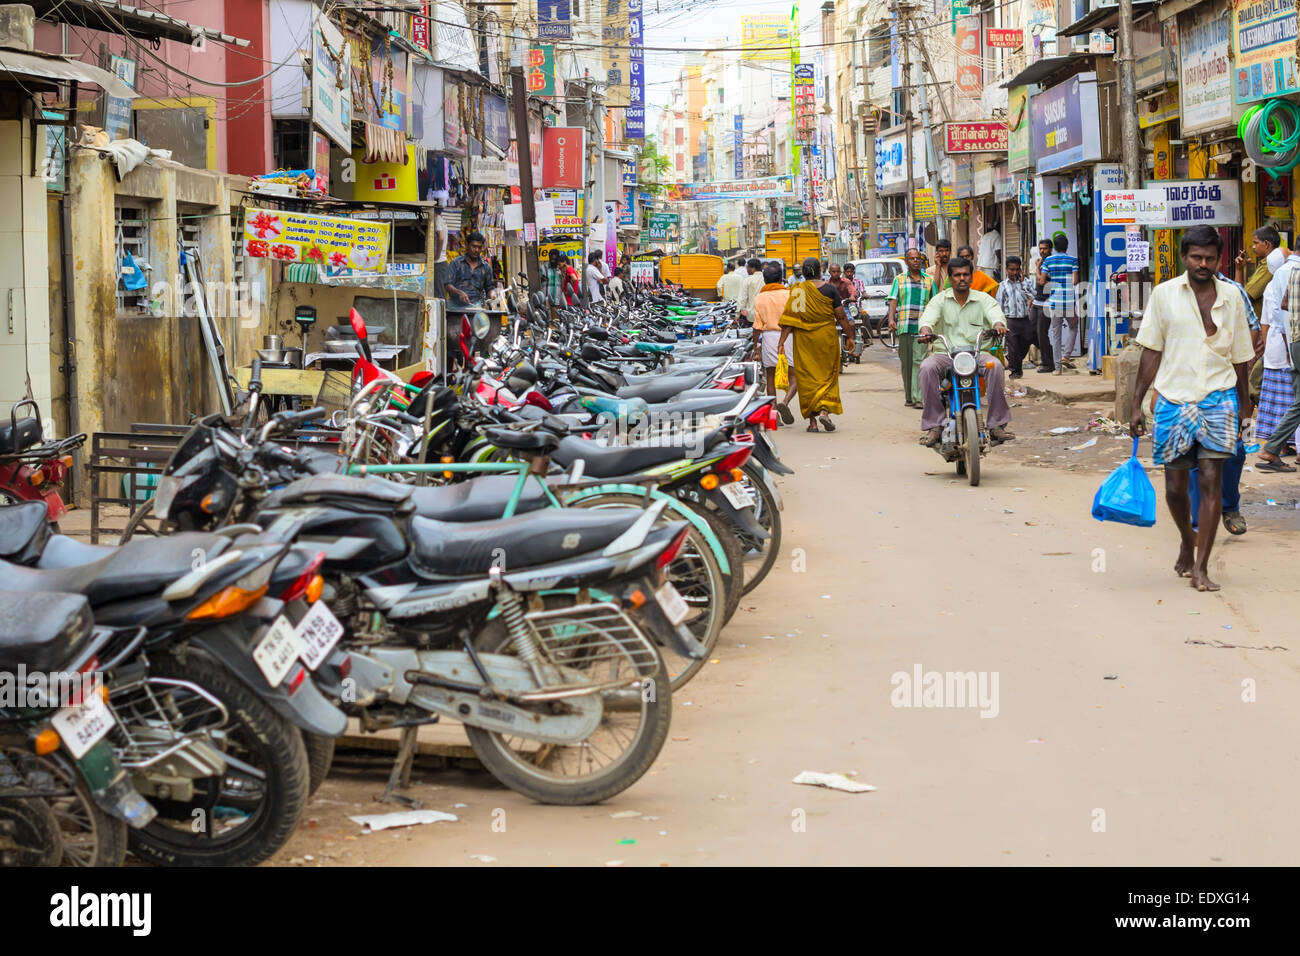 MADURAI, Indien - Februar 15: Indische Stadt Straße voll von einer nicht identifizierten Personen, die jeden Tag zu besuchen. Indien, Tamil Nadu, Prozedur Stockfoto